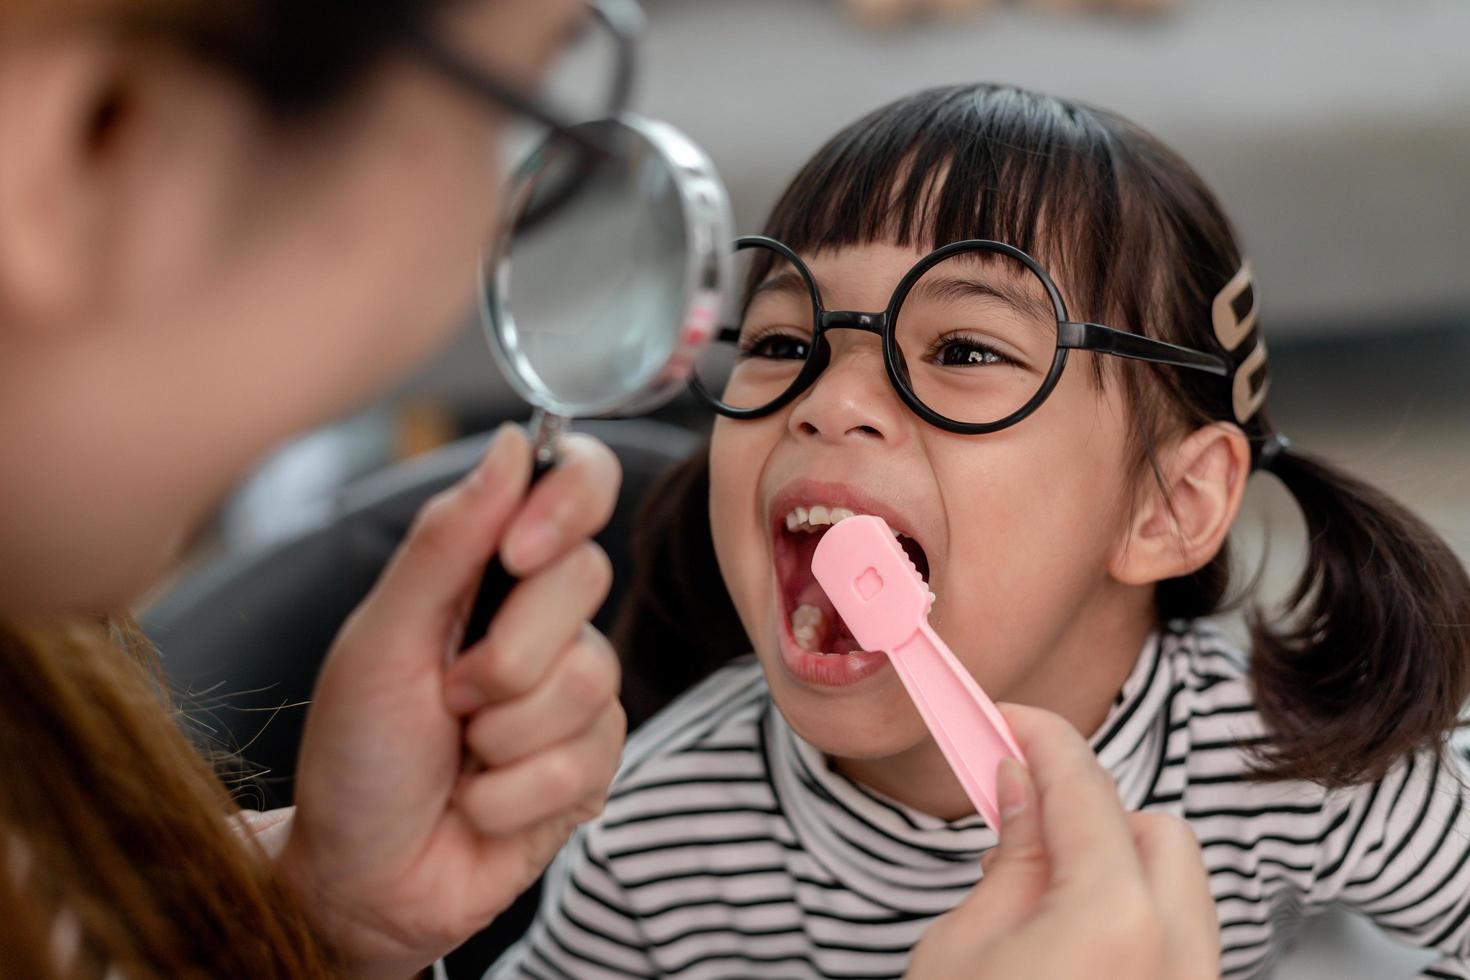 söta asiatiska barn som leker med läkare tandläkare leksaksset, barn visar hur man rengör och tar hand om tänderna. tandvård och medicin, foto